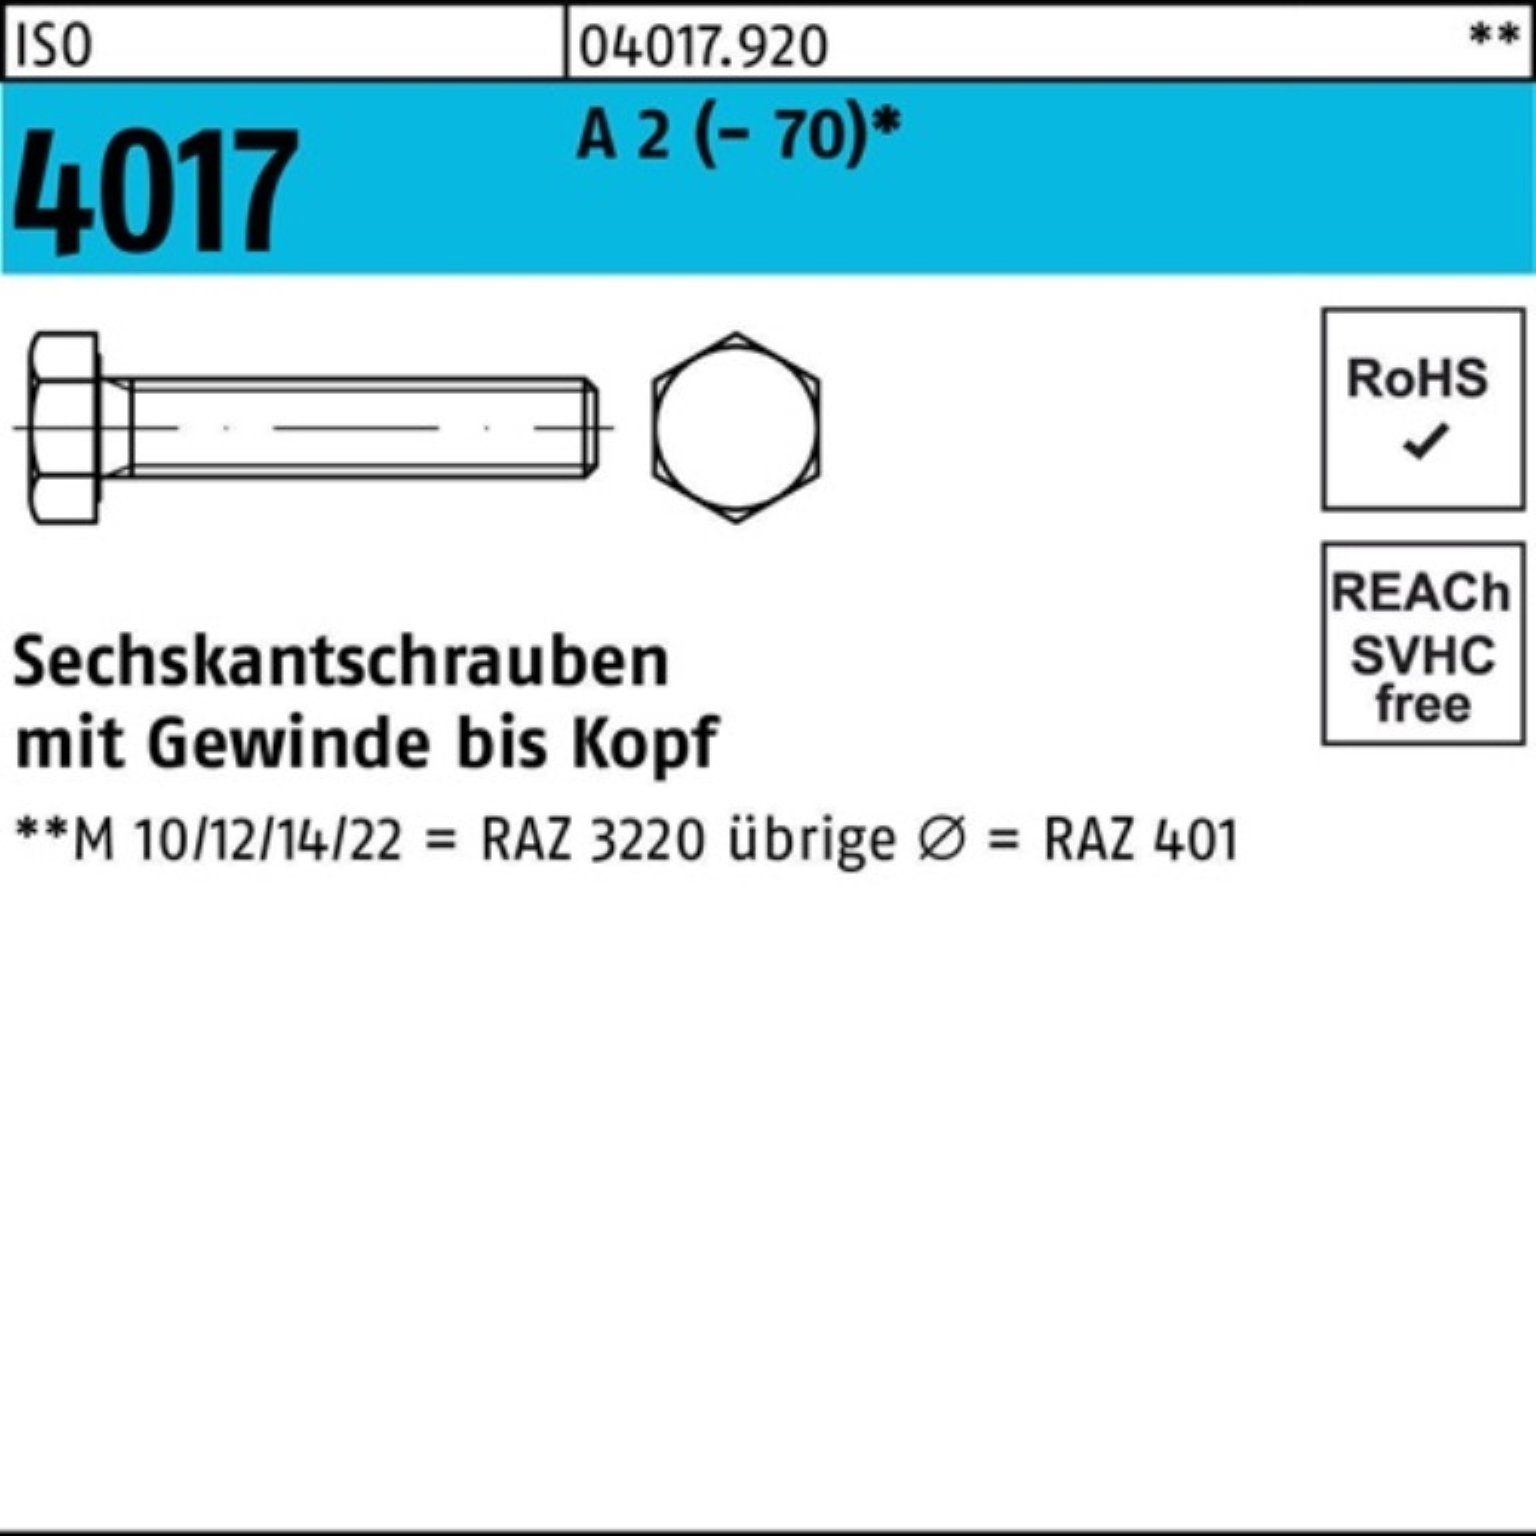 Bufab Sechskantschraube 100er Pack (70) Stück ISO 150 A 4017 VG 2 M14x Sechskantschraube 25